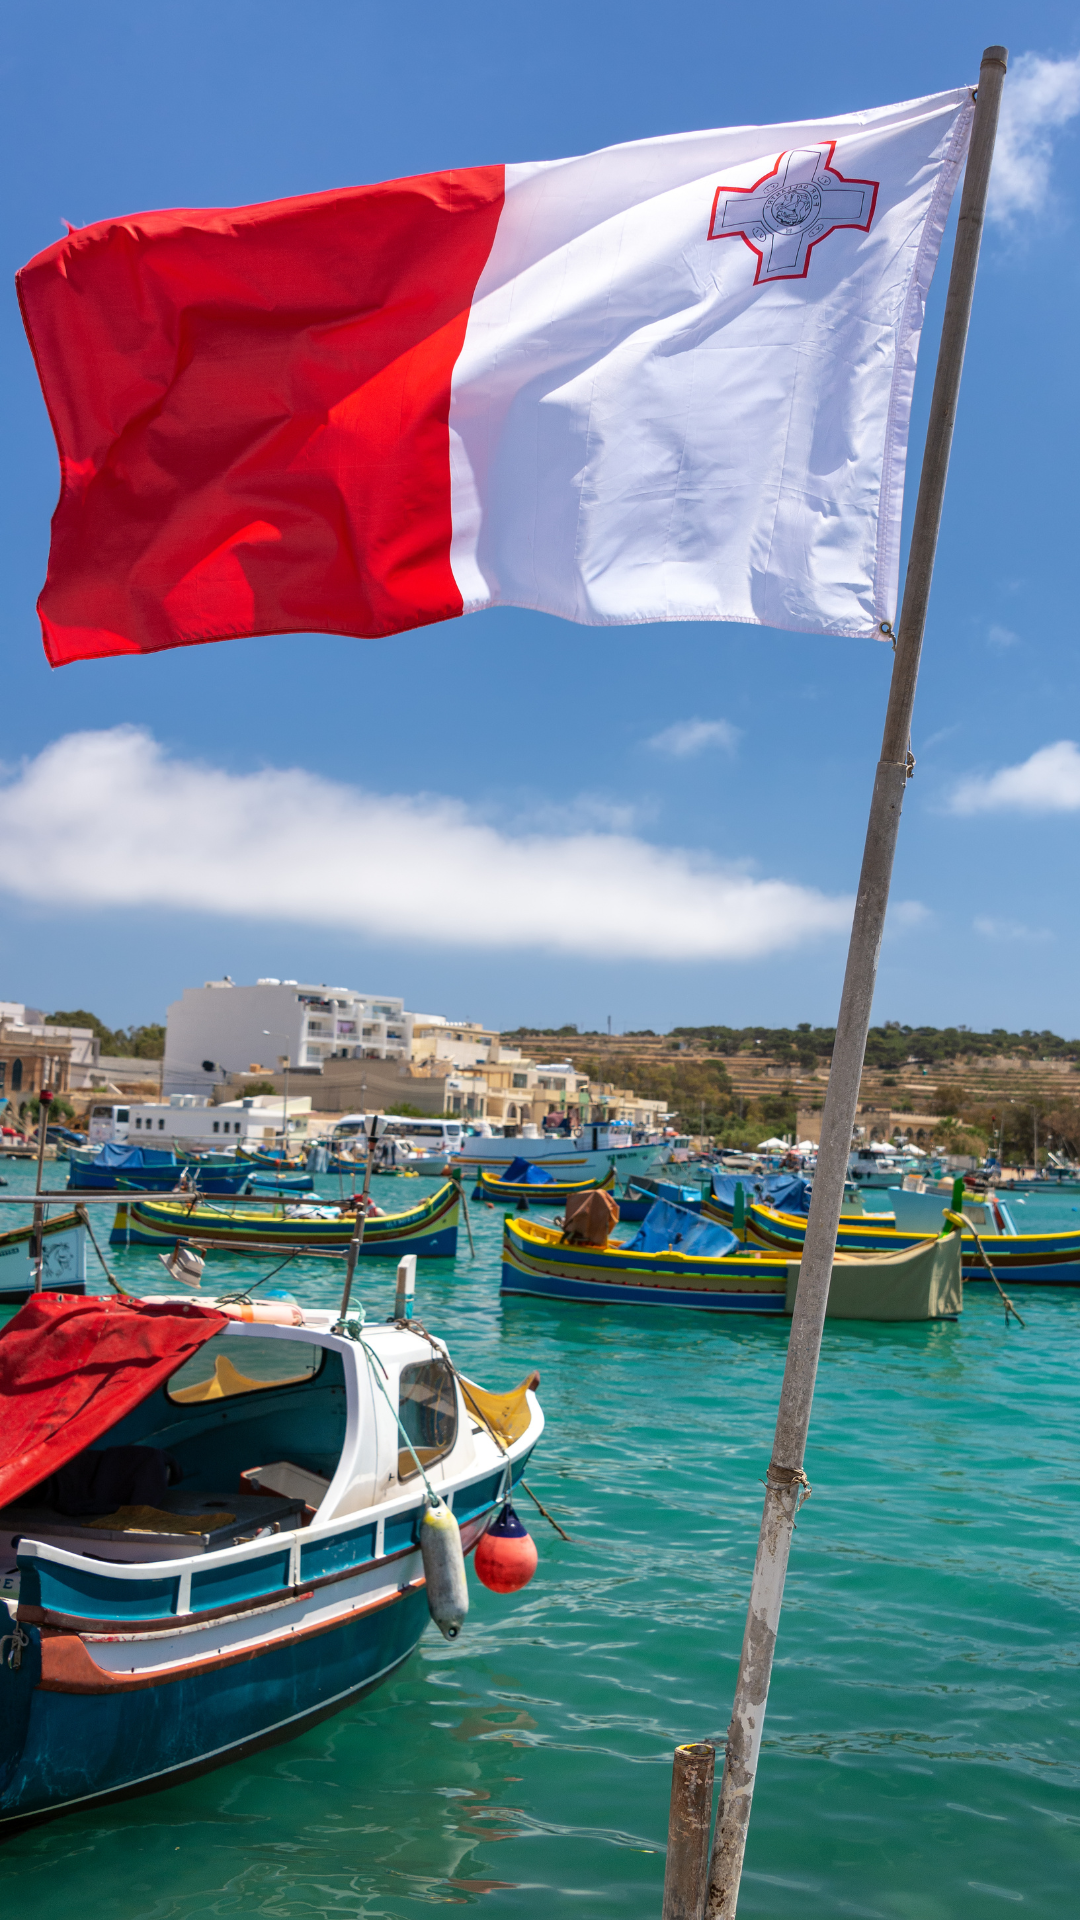 Hier siest du wie die Malta Flage mit ihren typischen Farben, rot und weiß im Wind weht. Im Hintergrund siehst du einen Hafen mit einem kleinen Bot und türkisem Wasser.